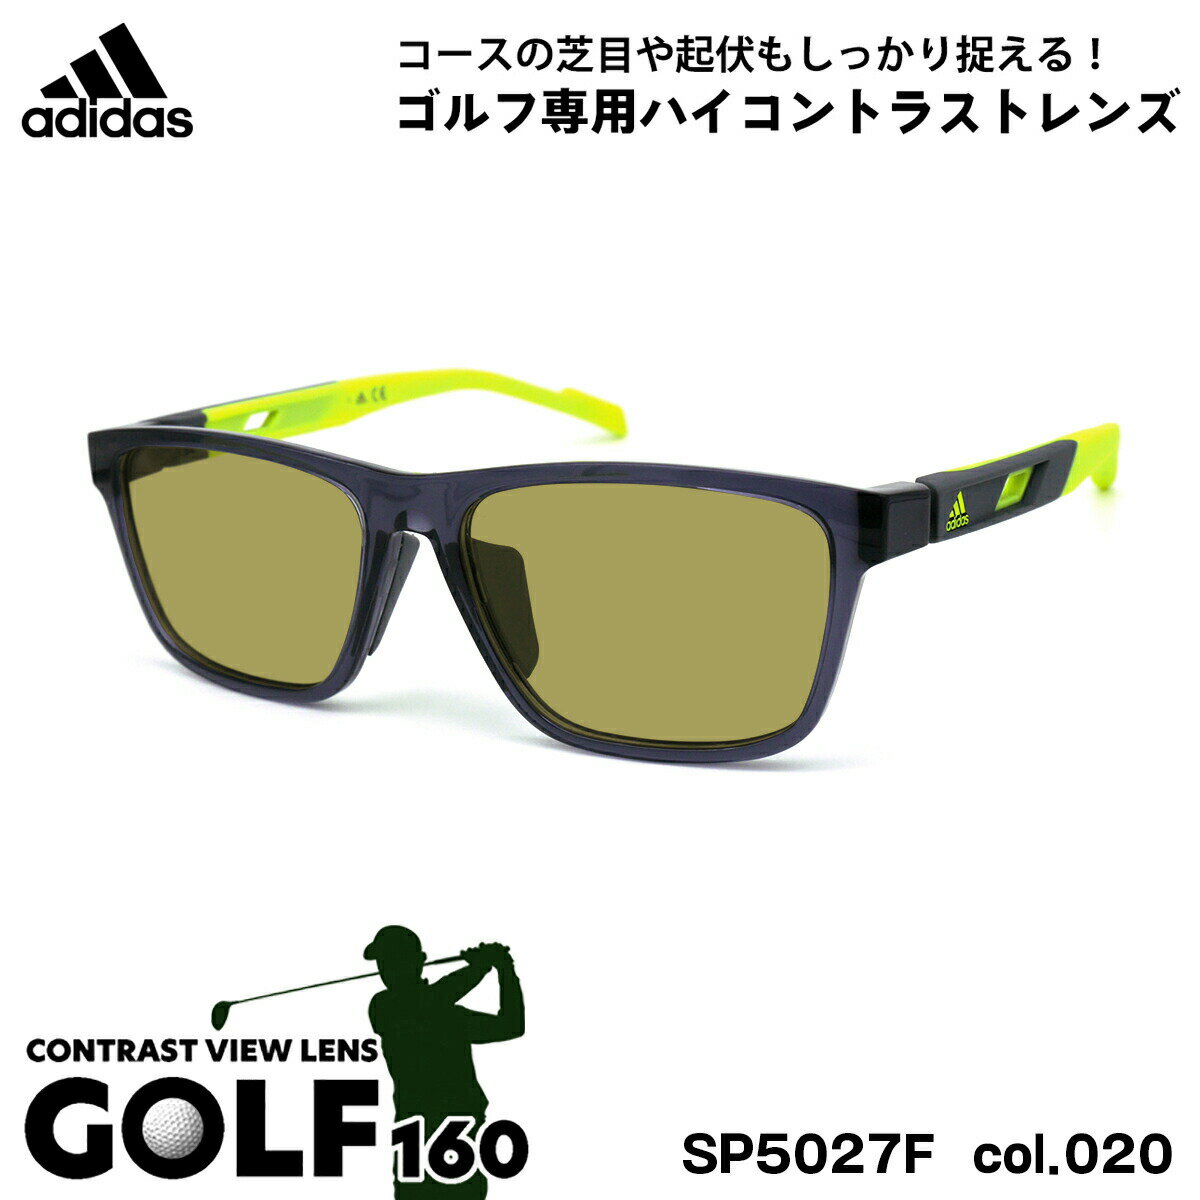 アディダス アディダス サングラス ゴルフ SP5027F (SP5027F/V) col.020 56mm adidas アジアンフィット 国内正規品 UVカット メンズ レディース GOLF160